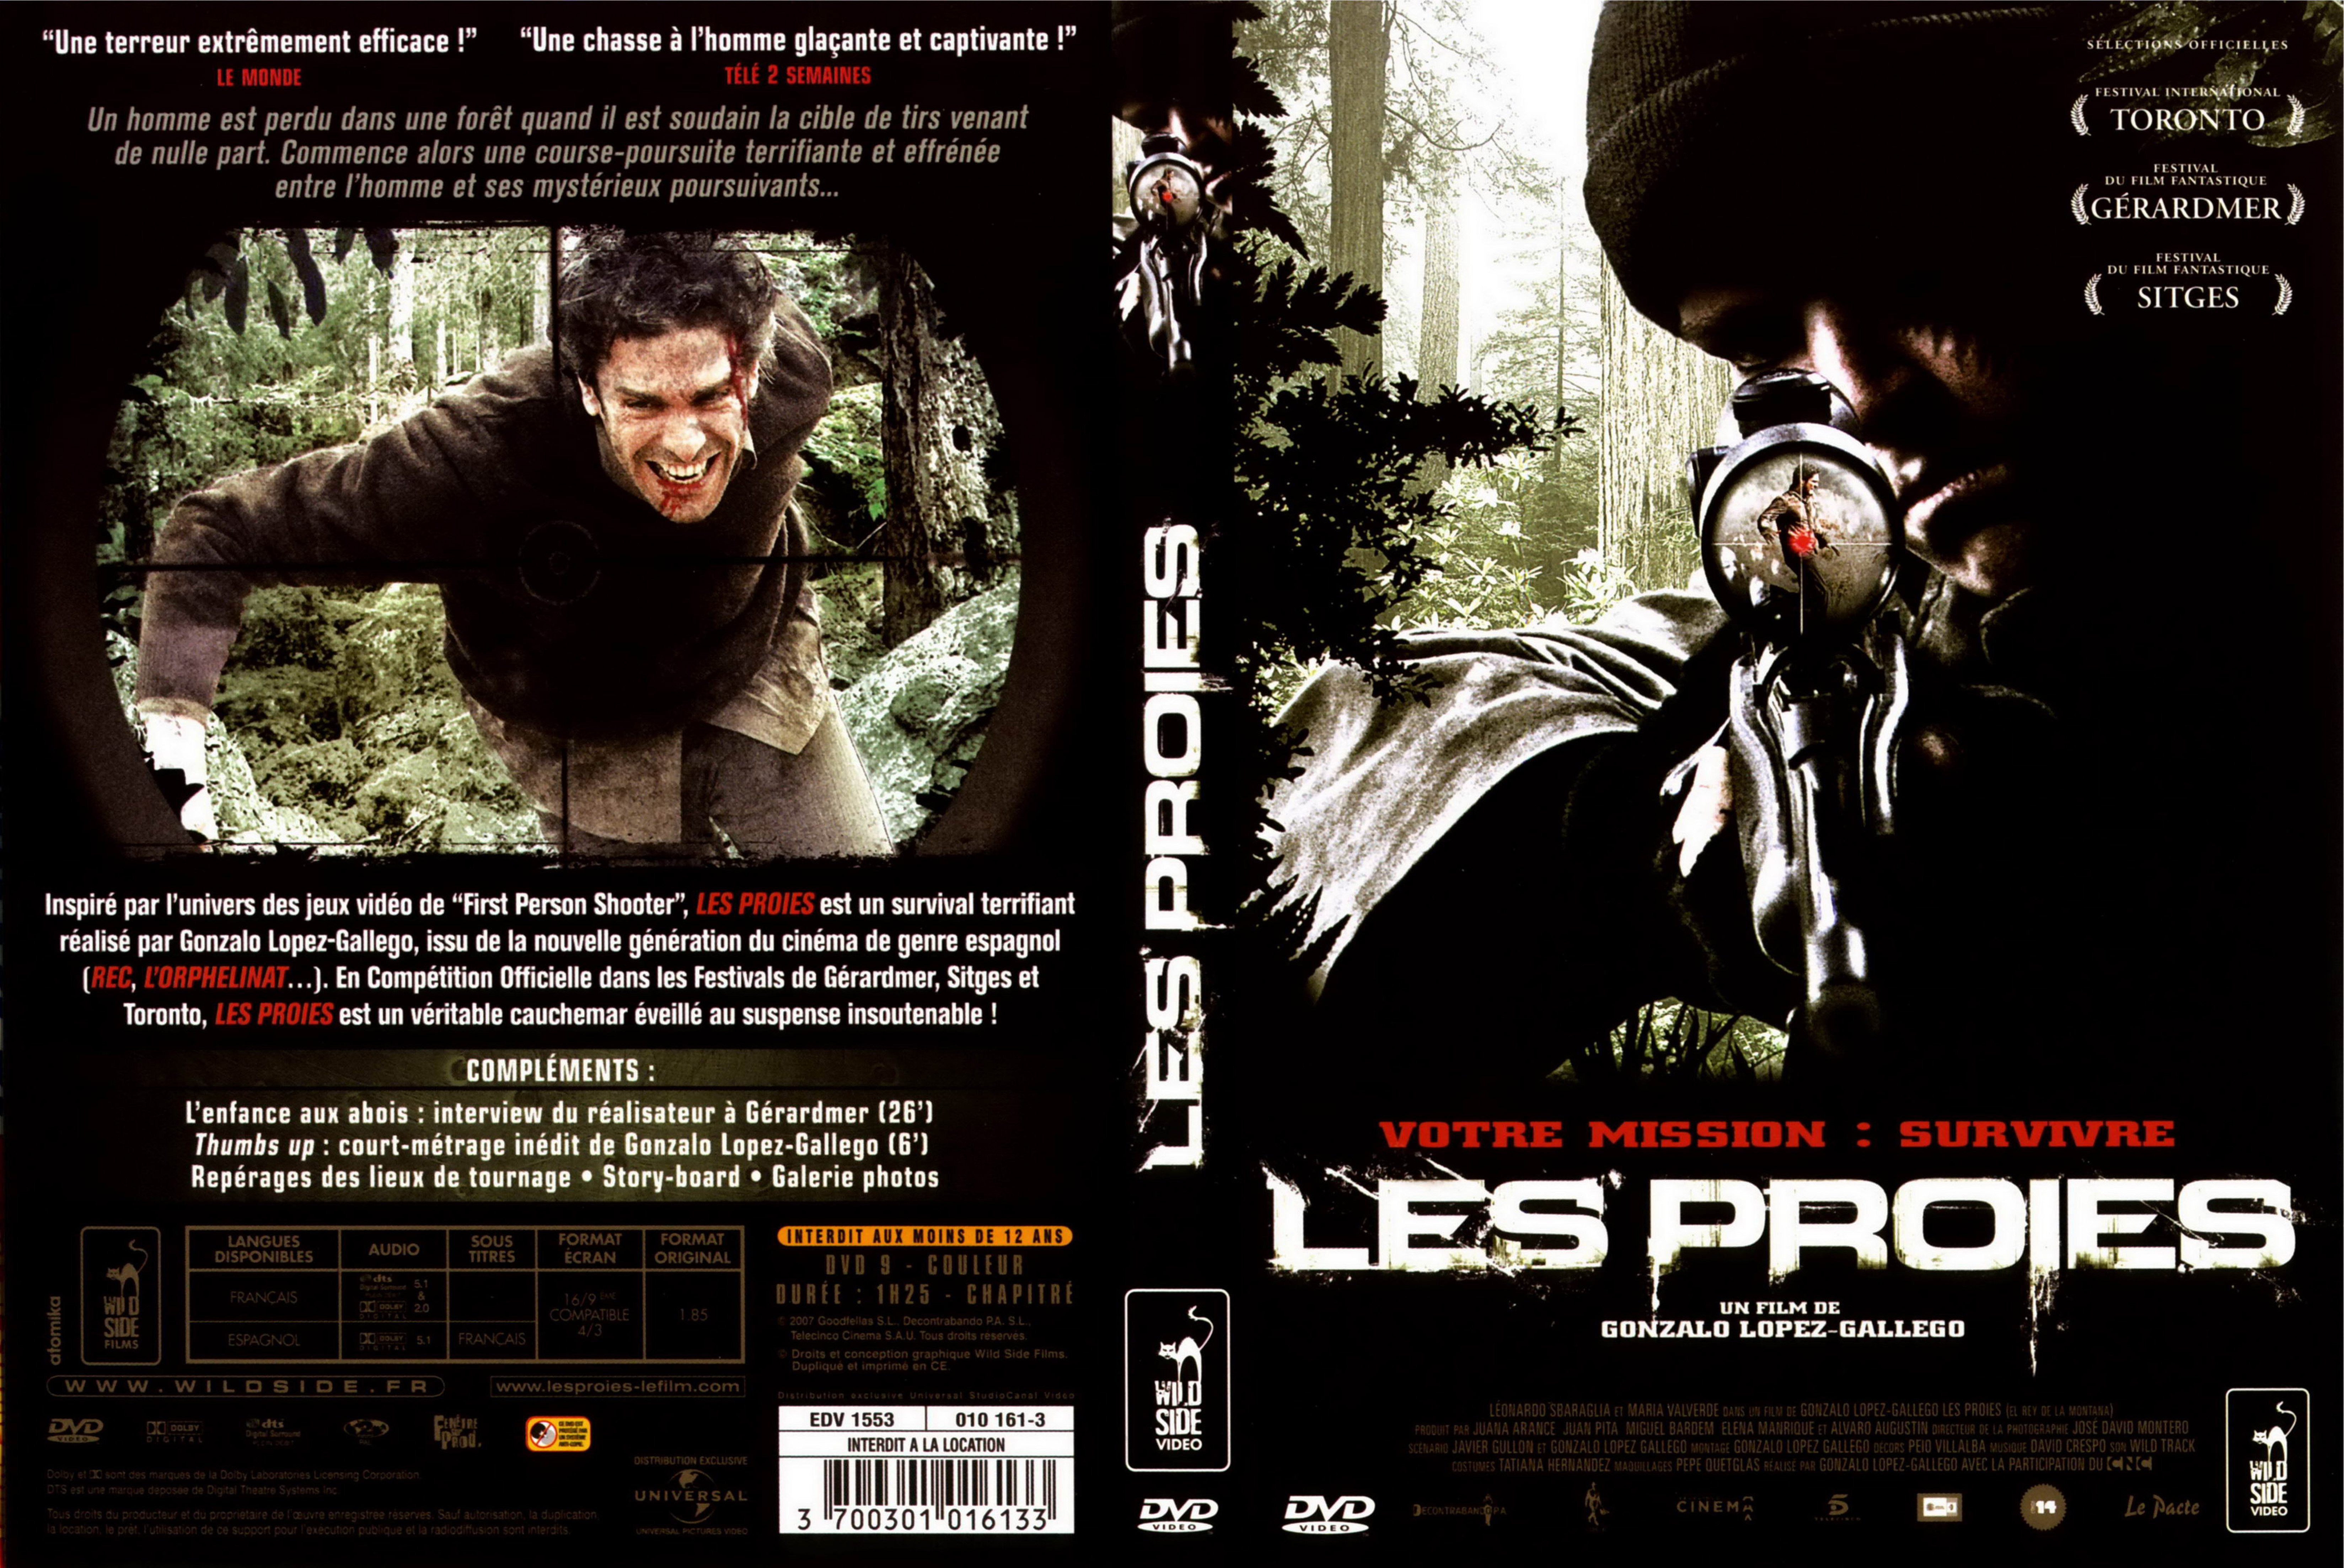 Jaquette DVD Les proies (2008)